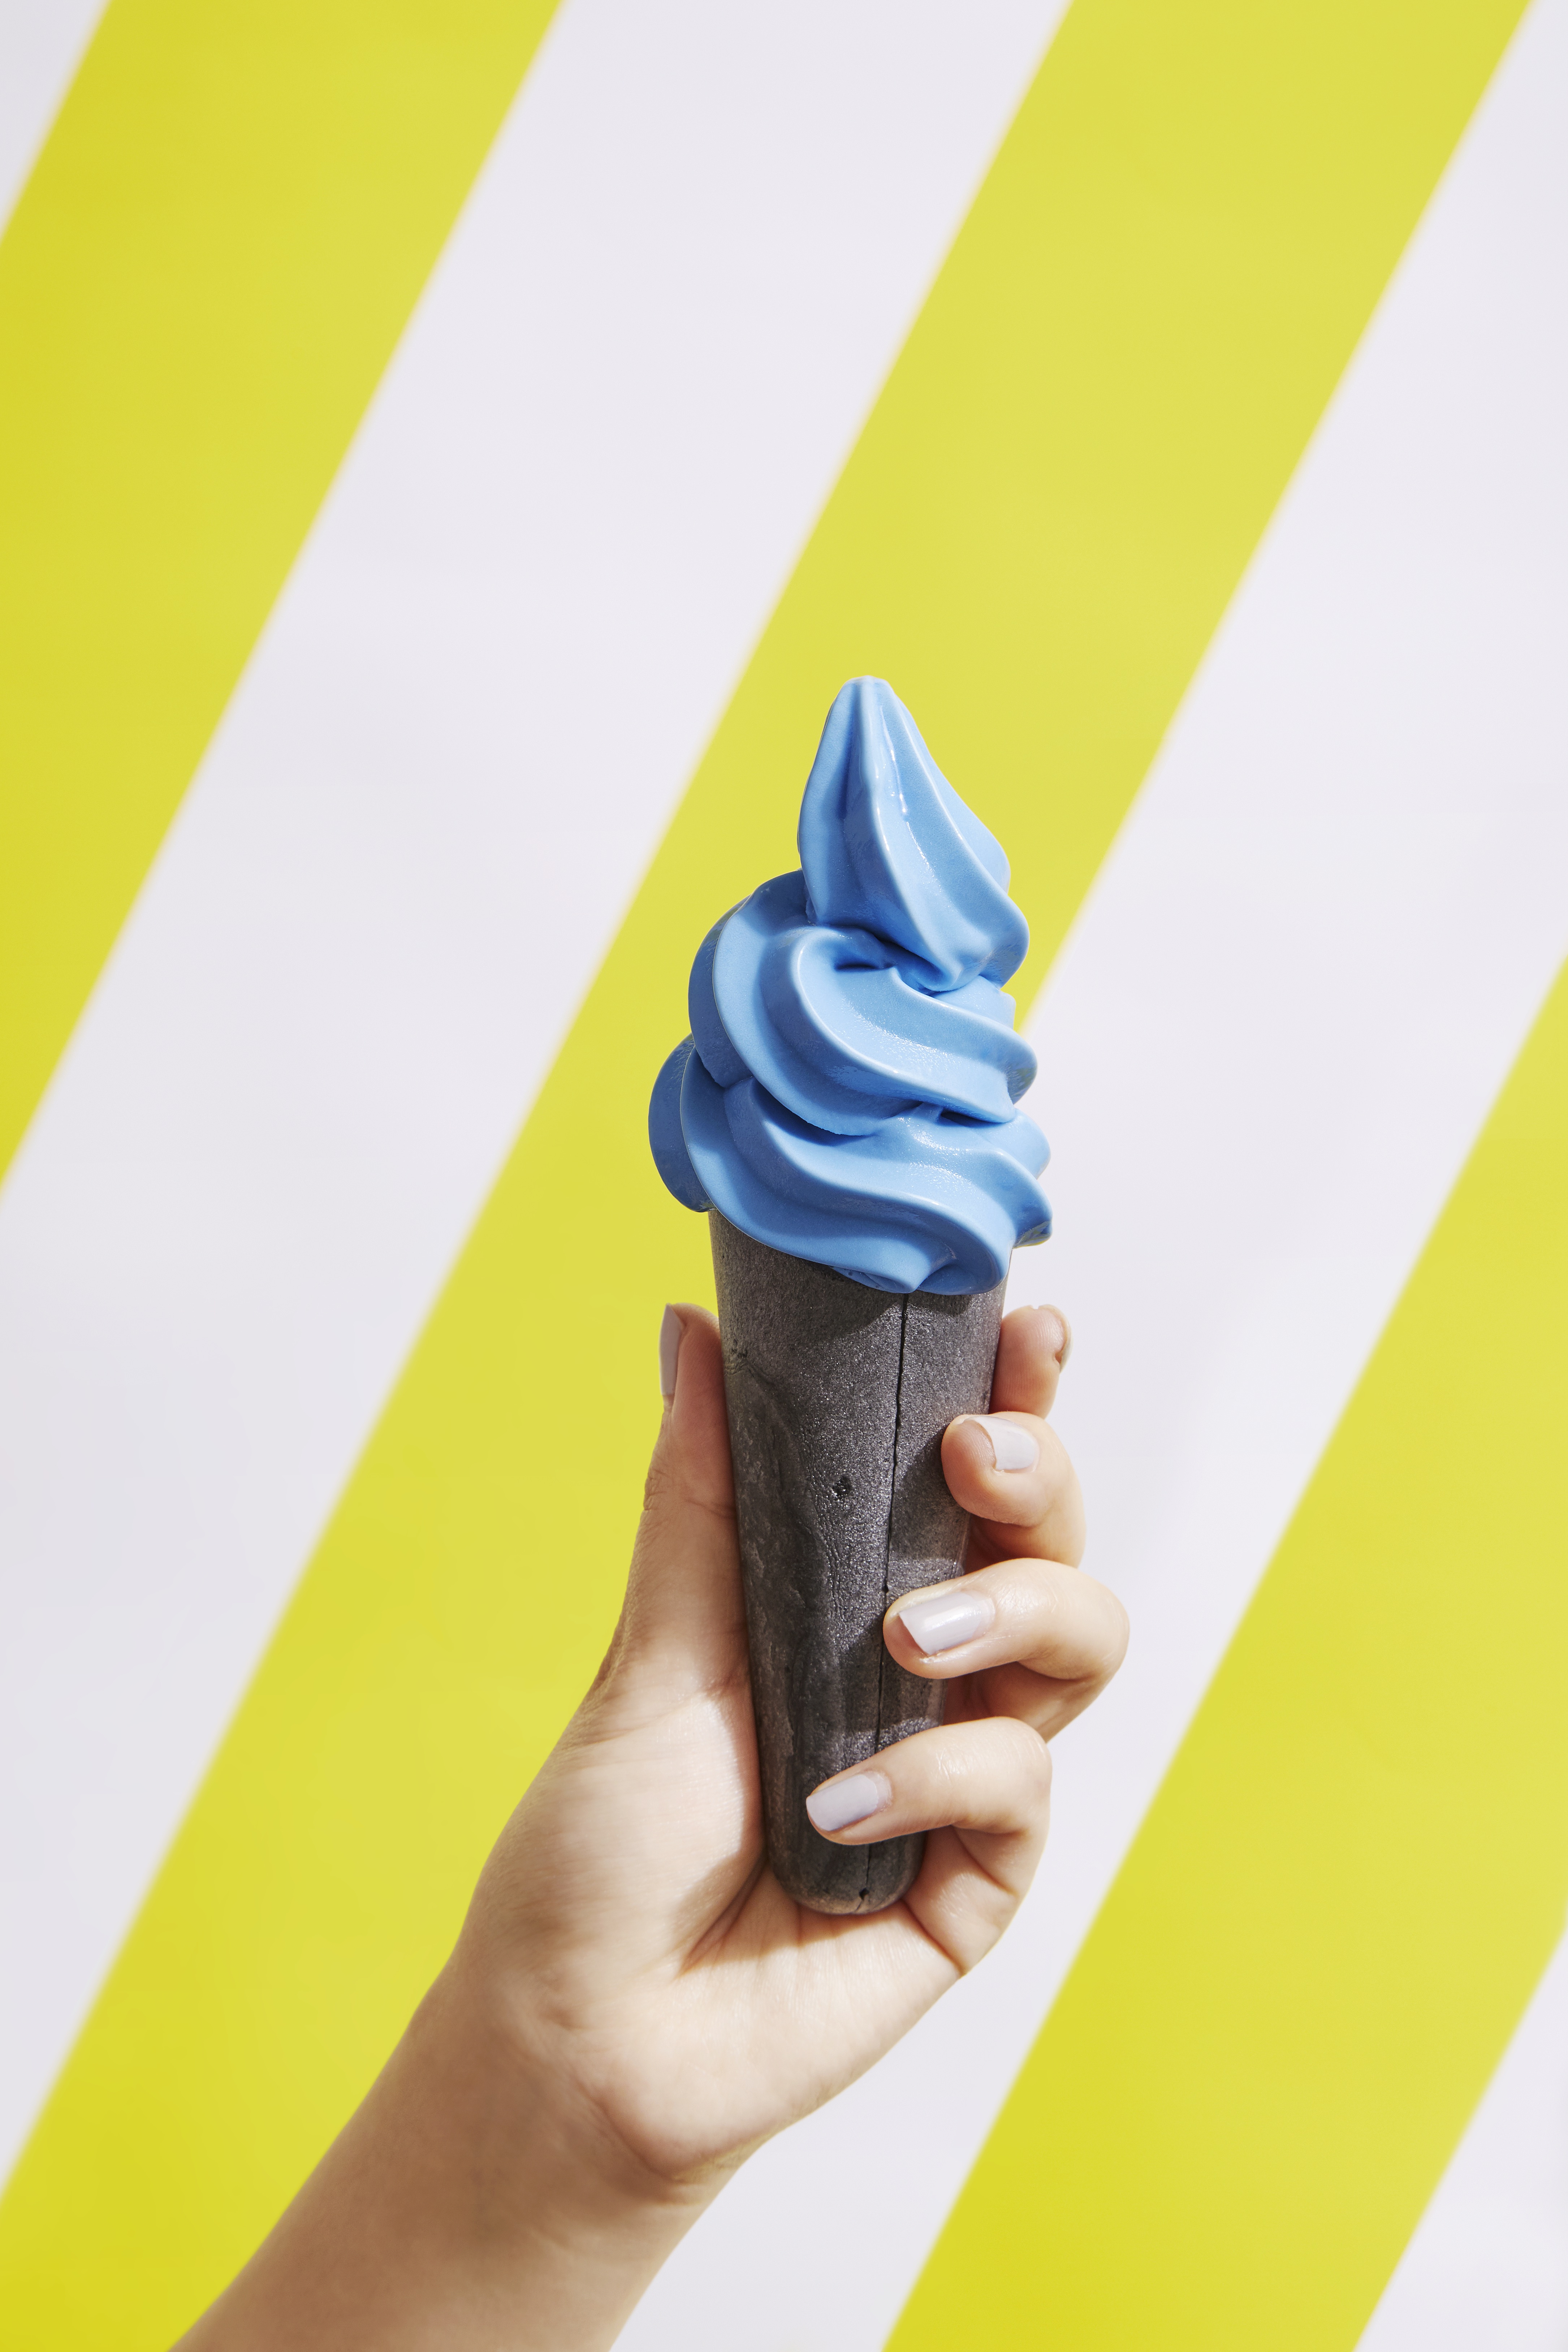 最新テクノロジーでつくるヴィーガンアイスを提供するアイスショップ Super Ice Creameryから 真っ青な生ヴィーガンソフトクリームが7月3日 水 ソフトクリームの日に新登場 株式会社 Think Green Produceのプレスリリース